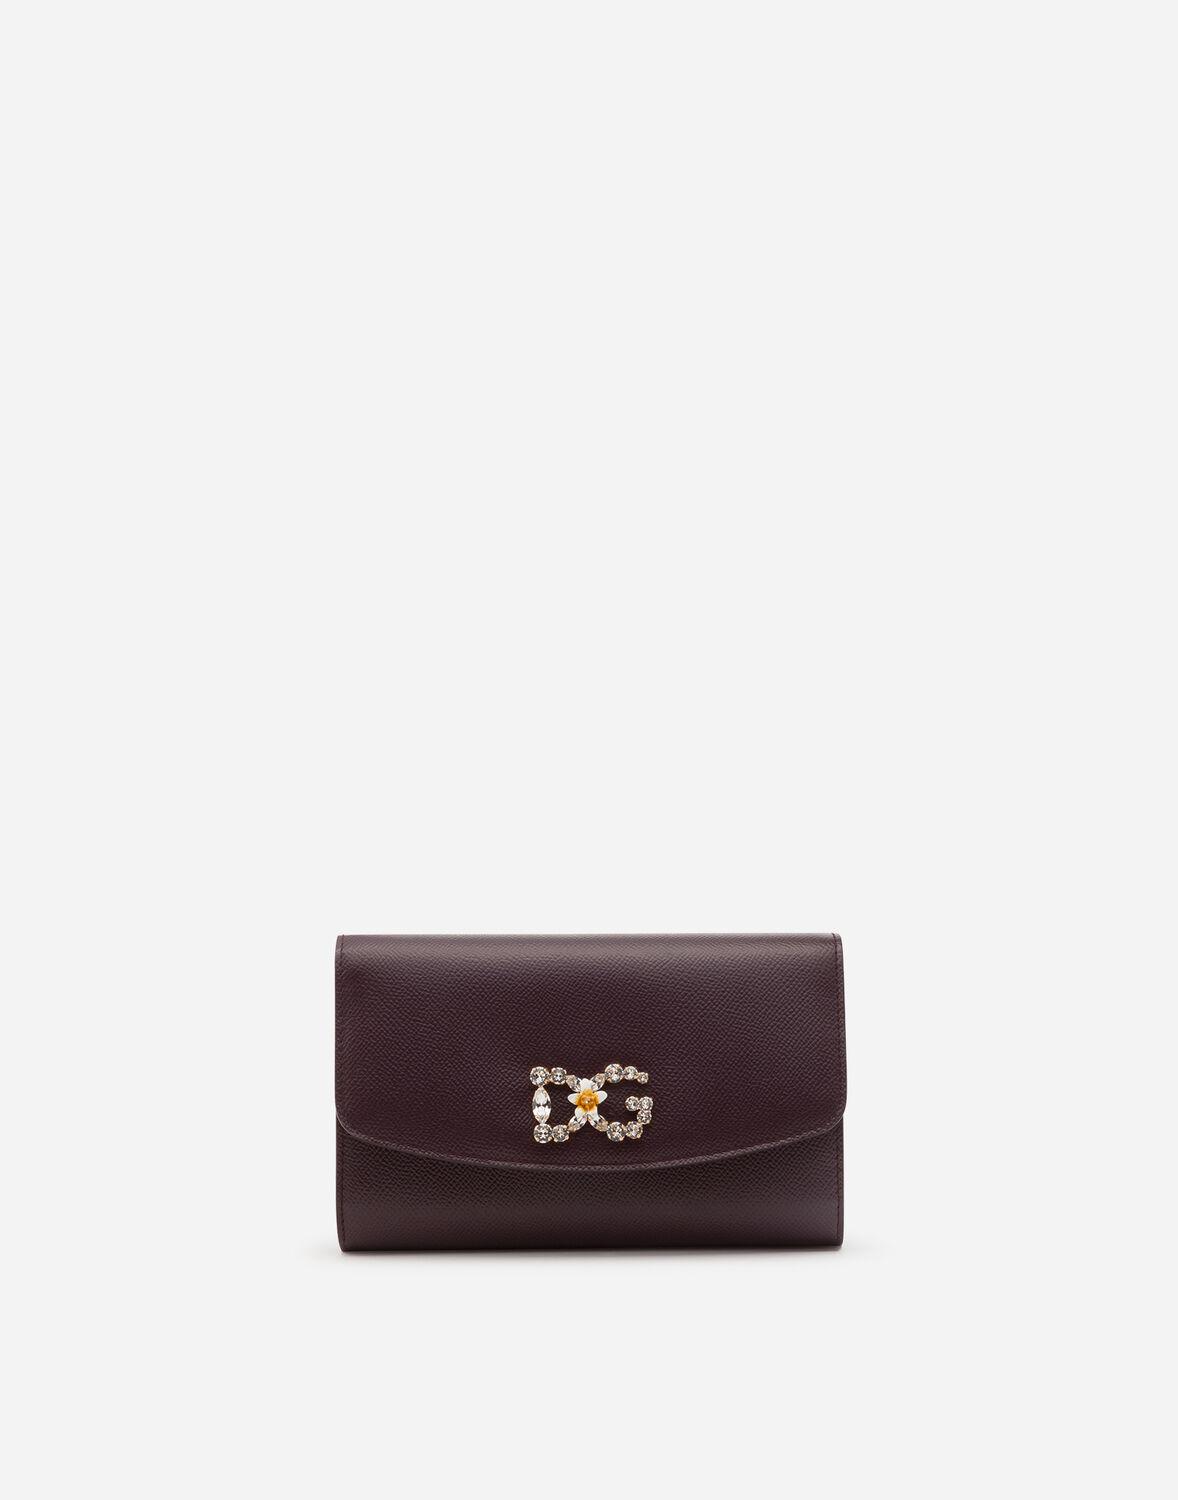 Dolce Gabbana D&G Women Min Von Bag in Dauphine Leather